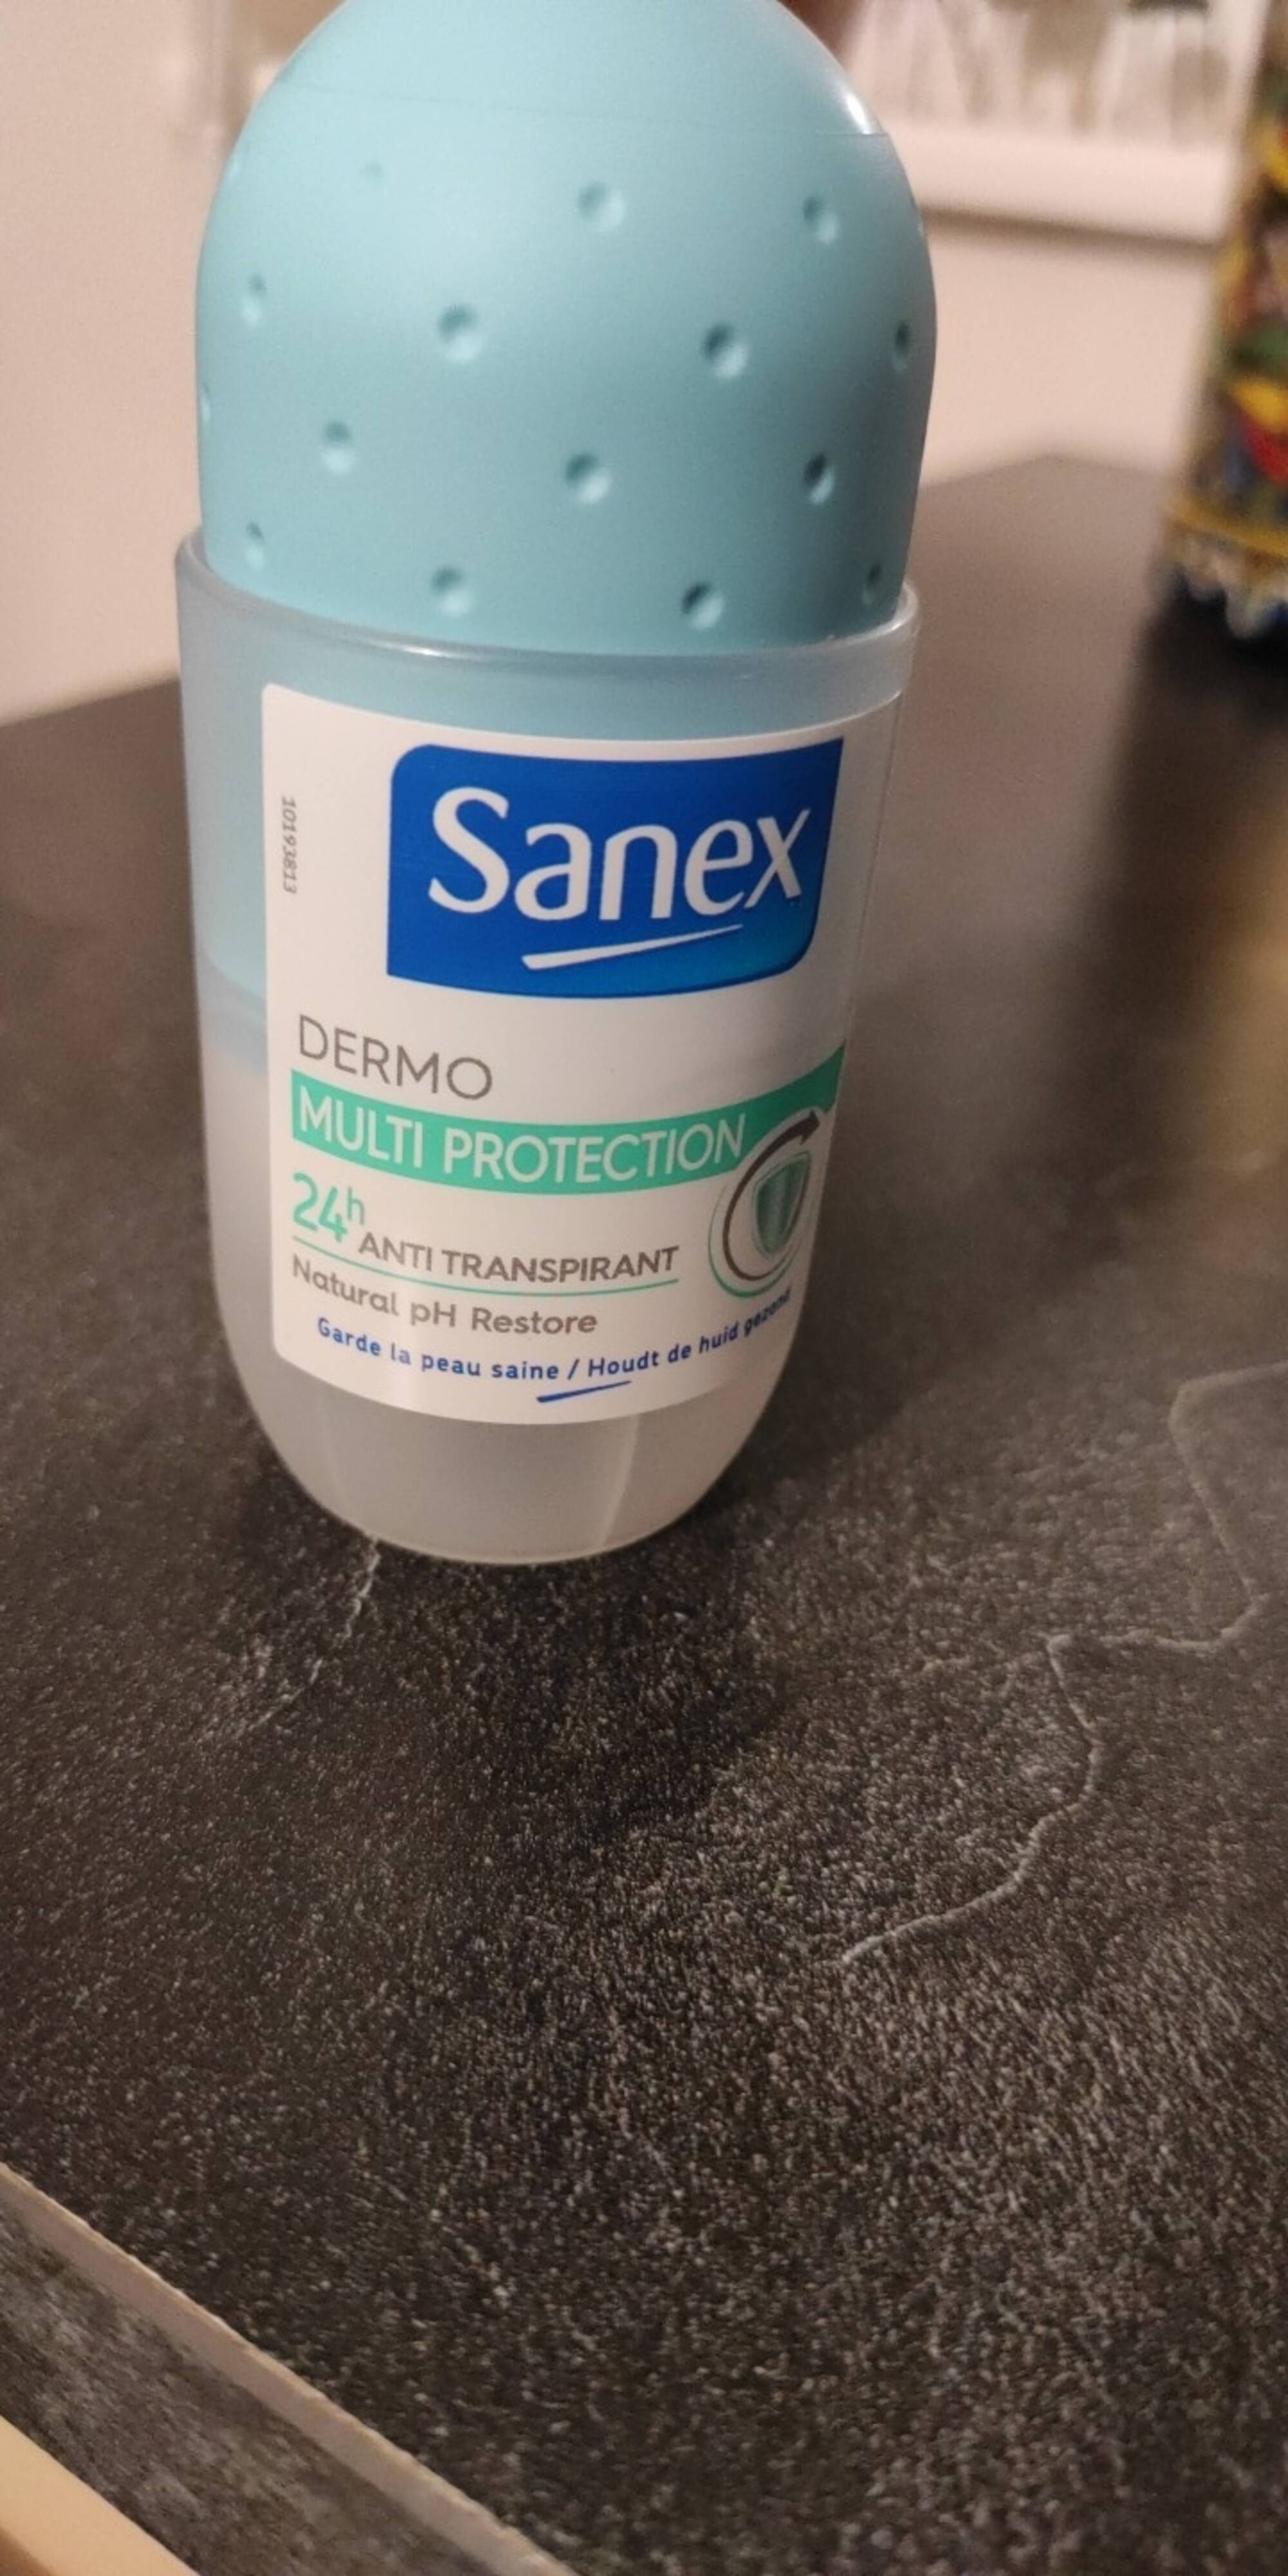 SANEX - Dermo multi protection - Anti transpirant 24h